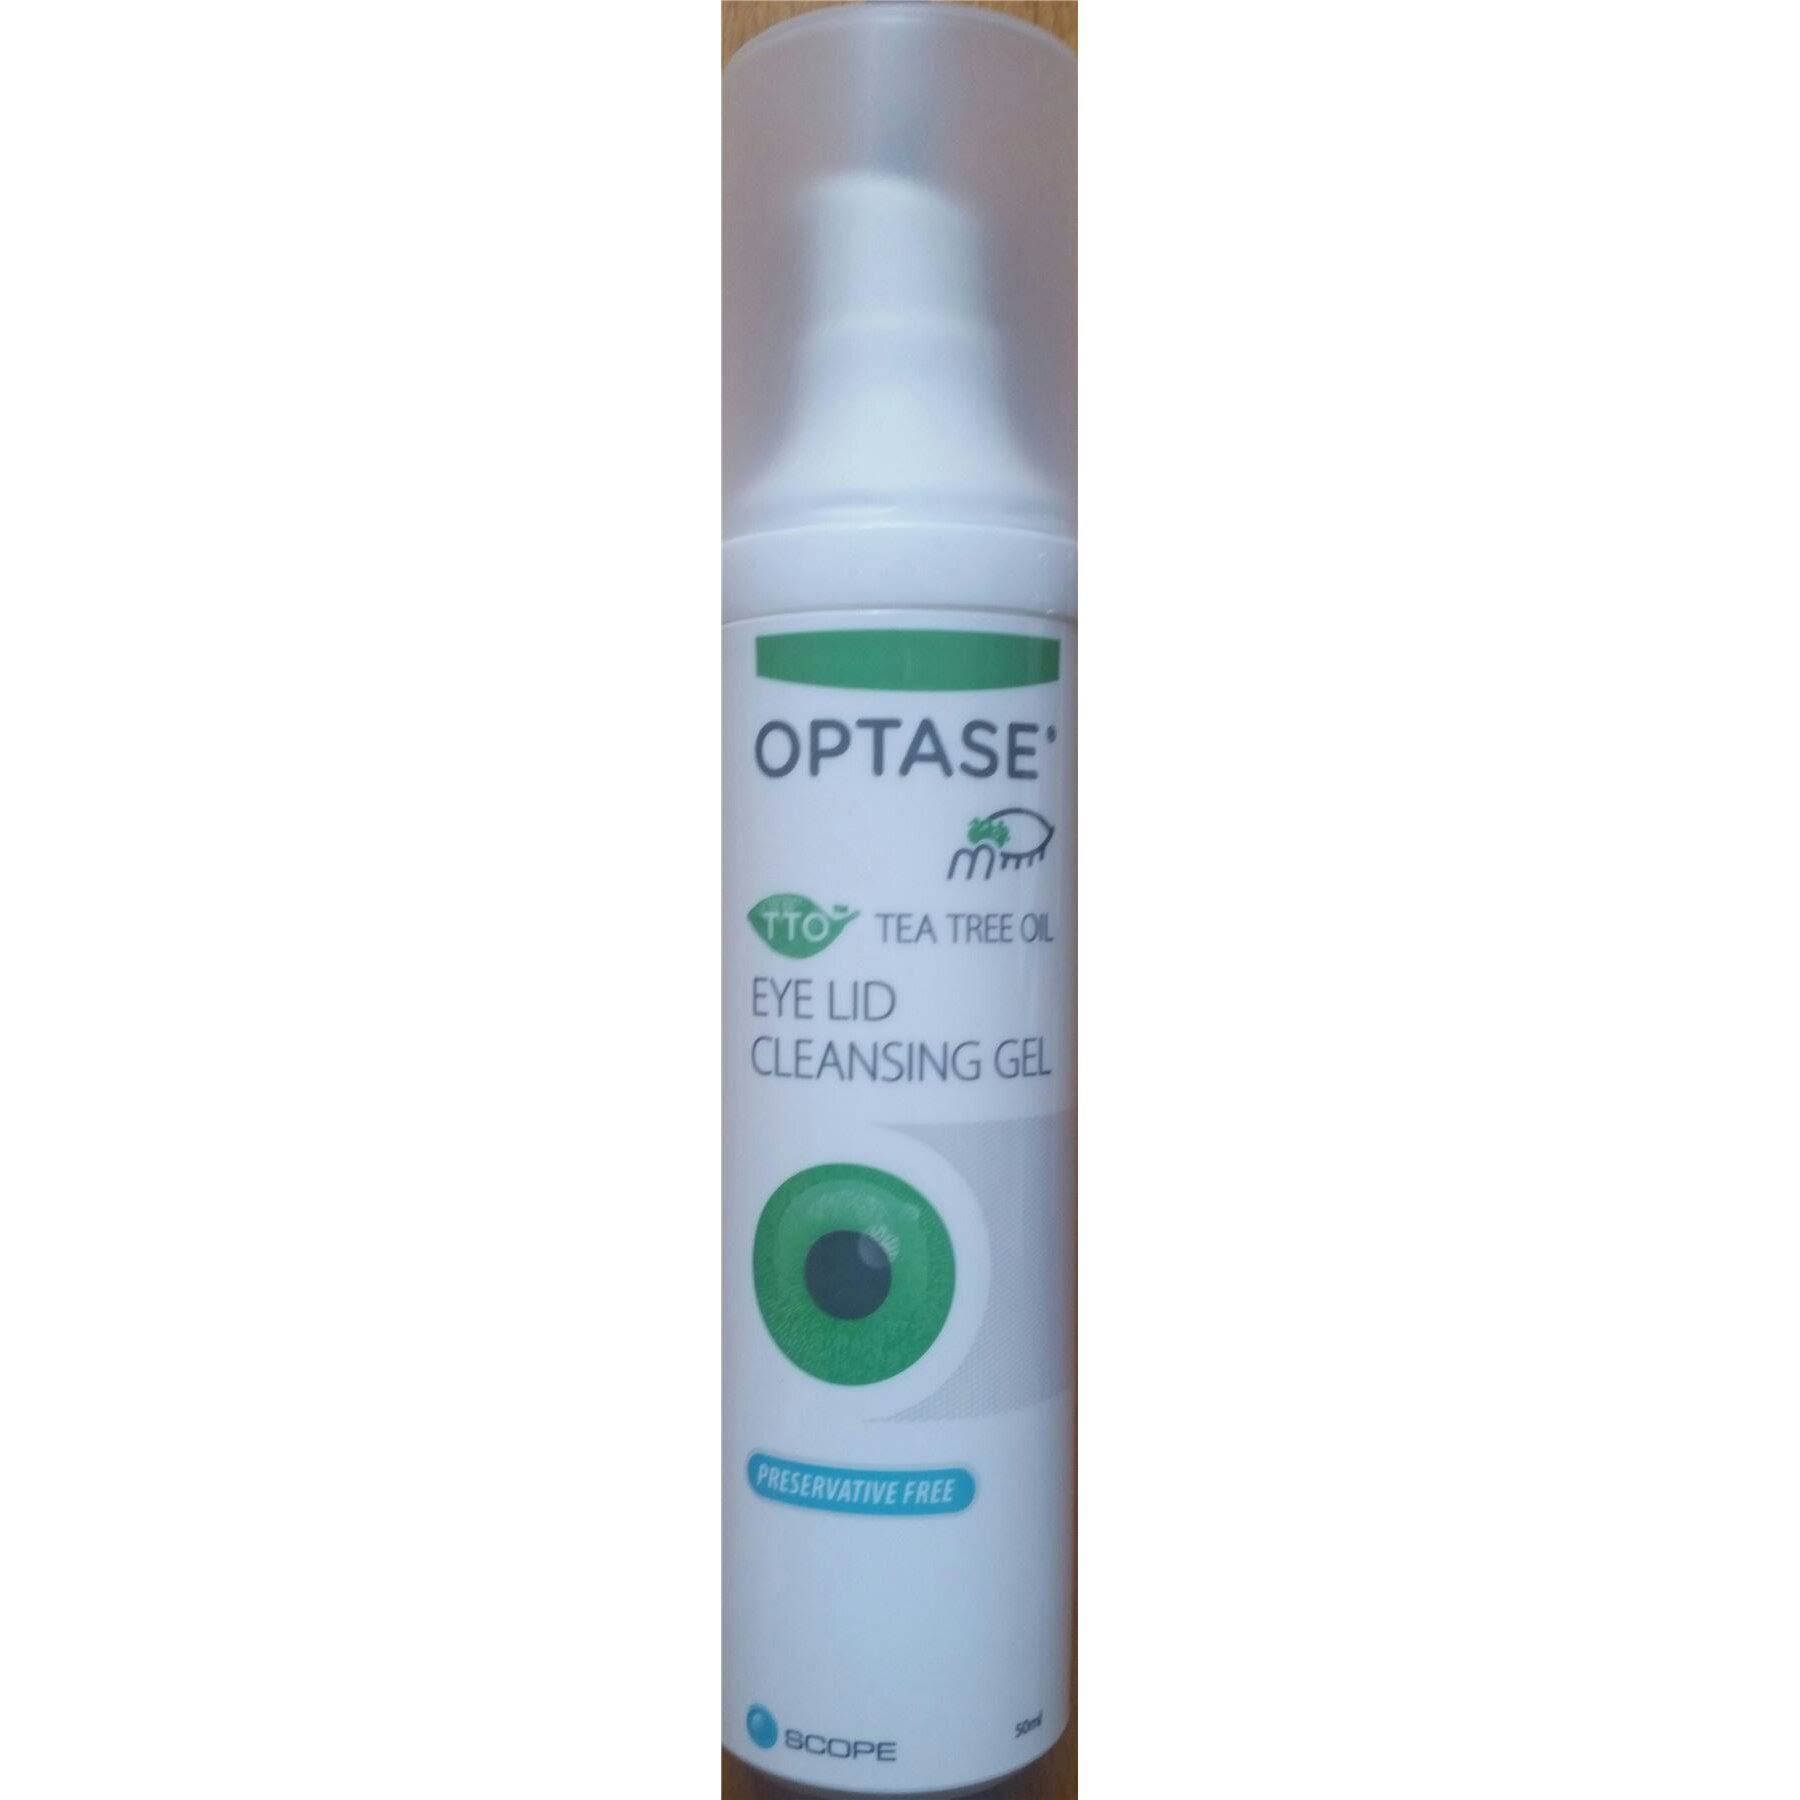 Optase TTO Tea Tree Oil Eye Lid Cleansing Gel 50ml Preservative Free